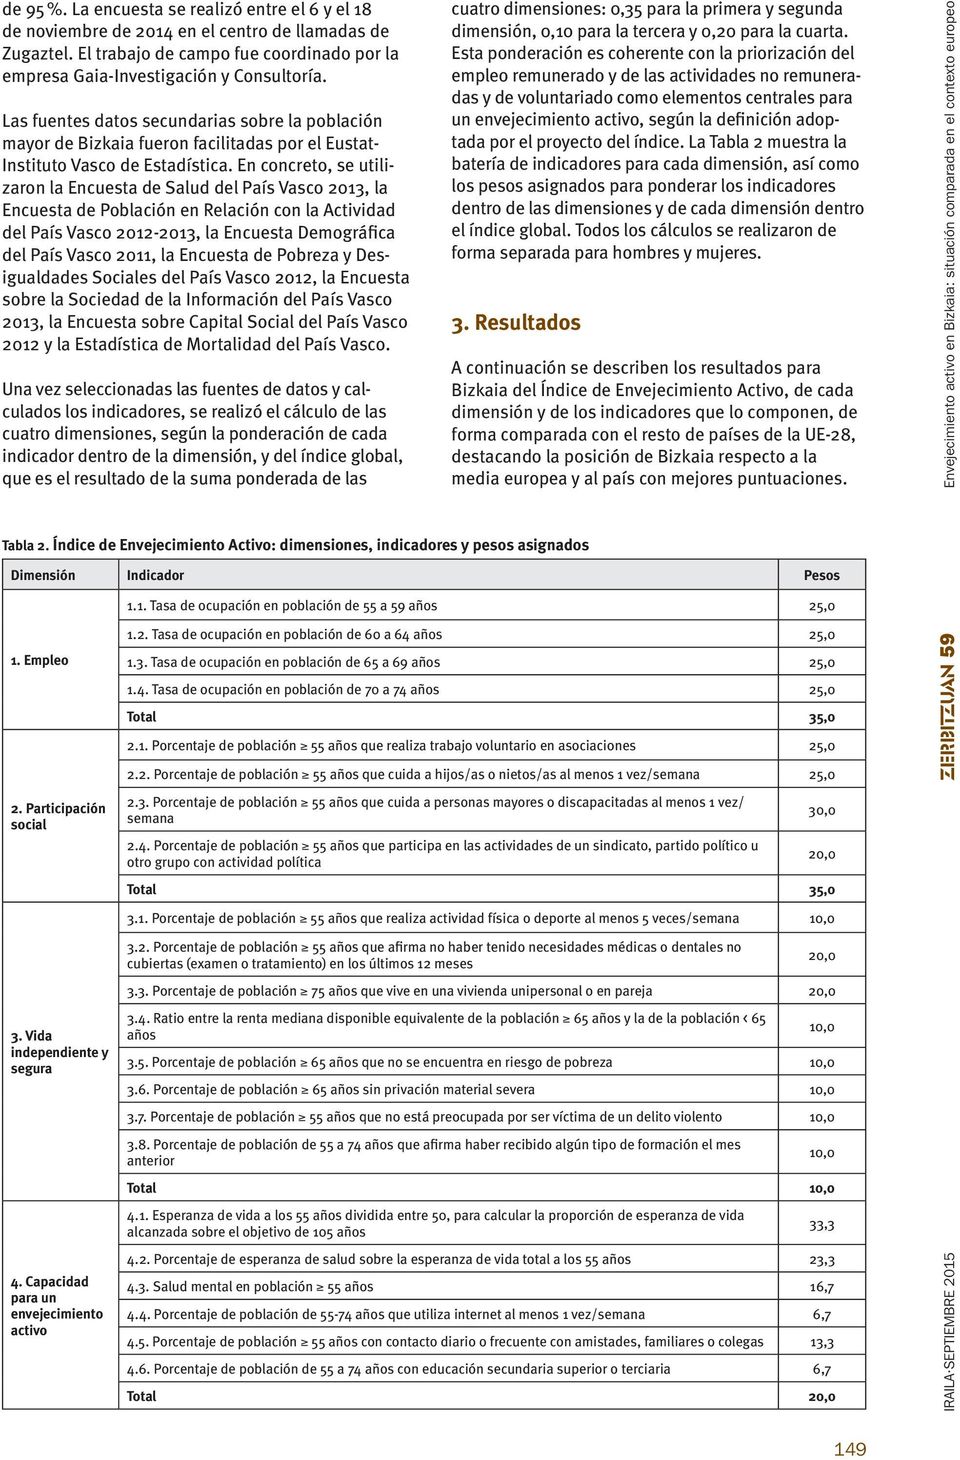 En concreto, se utilizaron la Encuesta de Salud del País Vasco 2013, la Encuesta de Población en Relación con la Actividad del País Vasco 2012-2013, la Encuesta Demográfica del País Vasco 2011, la